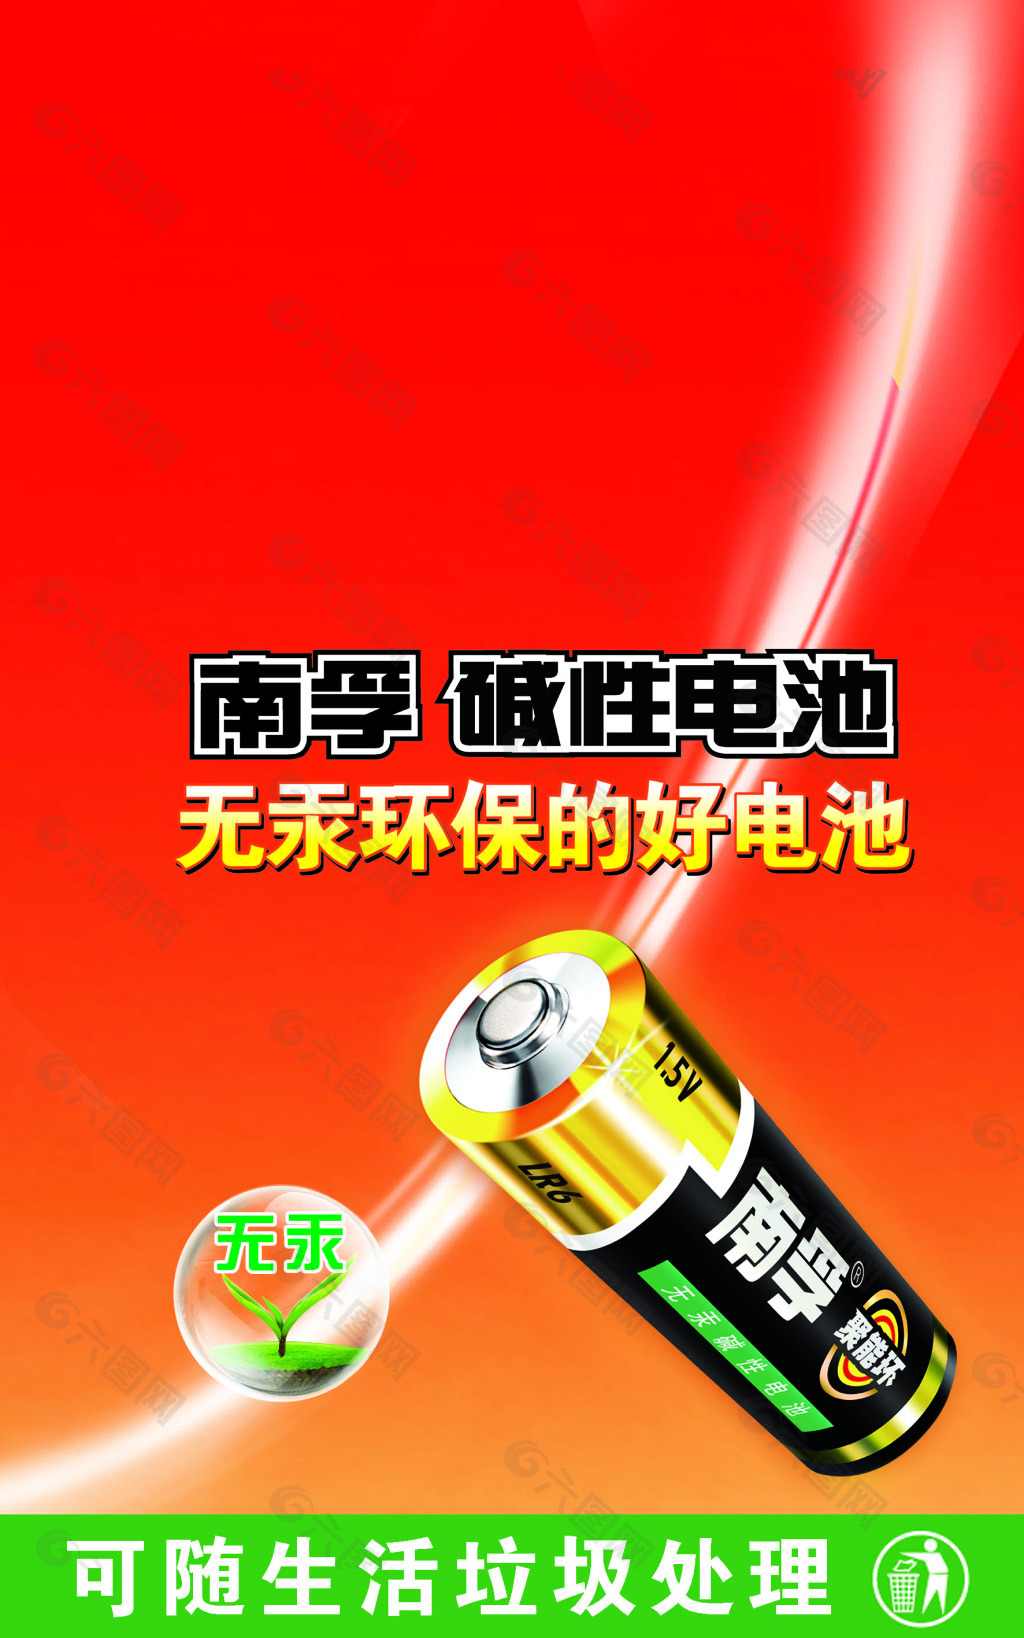 南孚碱性电池展板无汞环保平面广告素材免费下载(图片编号:5158864)